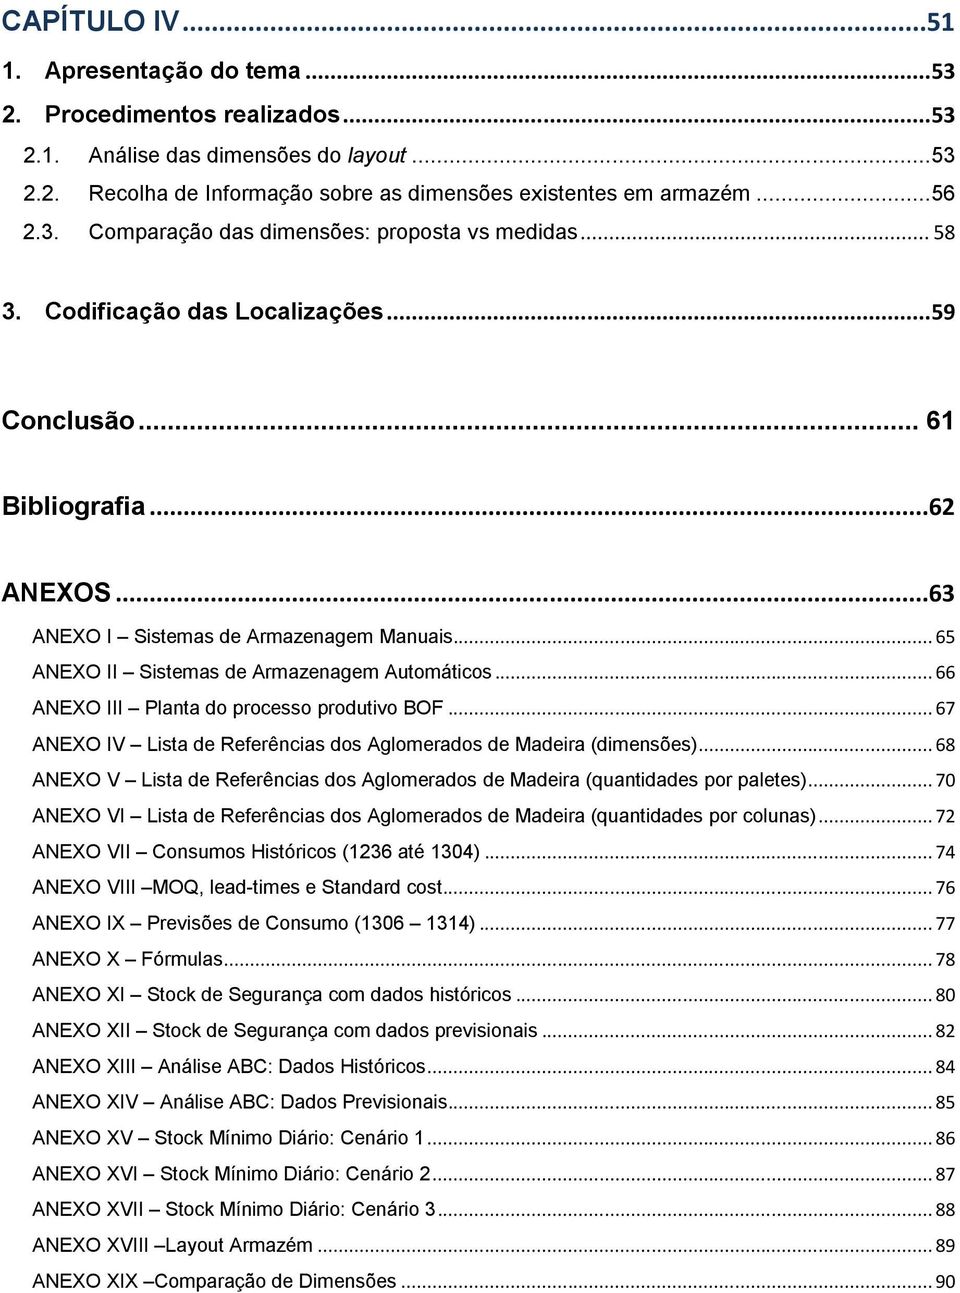 .. 65 ANEXO II Sistemas de Armazenagem Automáticos... 66 ANEXO III Planta do processo produtivo BOF... 67 ANEXO IV Lista de Referências dos Aglomerados de Madeira (dimensões).